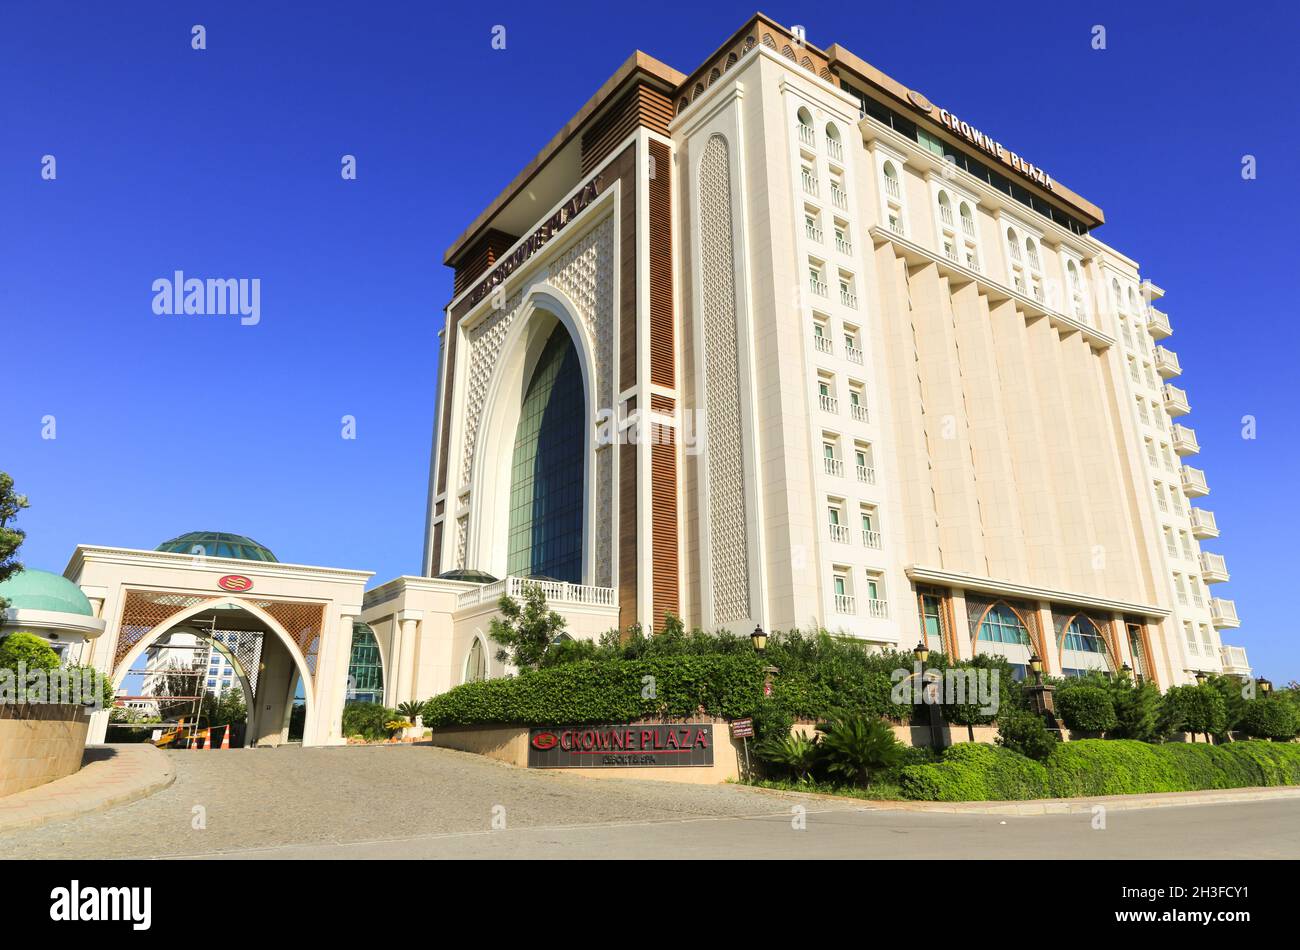 Il Crowne Plaza Antalya, un IHG Hotel, si trova ad Antalya, nel sud della Turchia e presenta una grande finestra ad arco all'entrata dell'hotel. Foto Stock